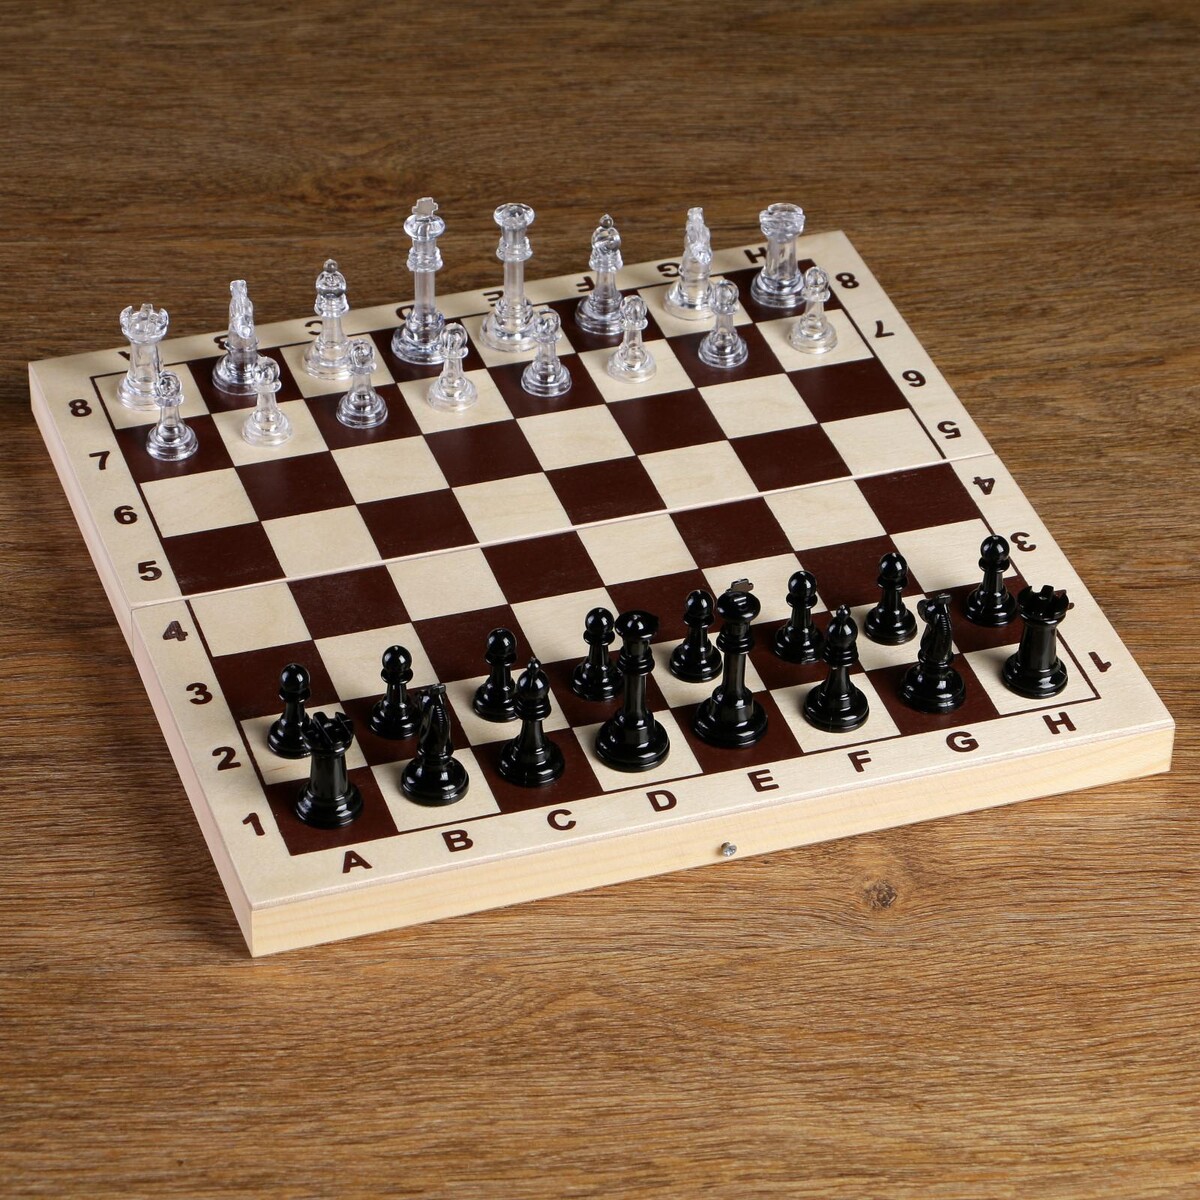 Шахматные фигуры, король h-5.8 см, пешка h-2.8 см шахматные фигуры гроссмейстерские